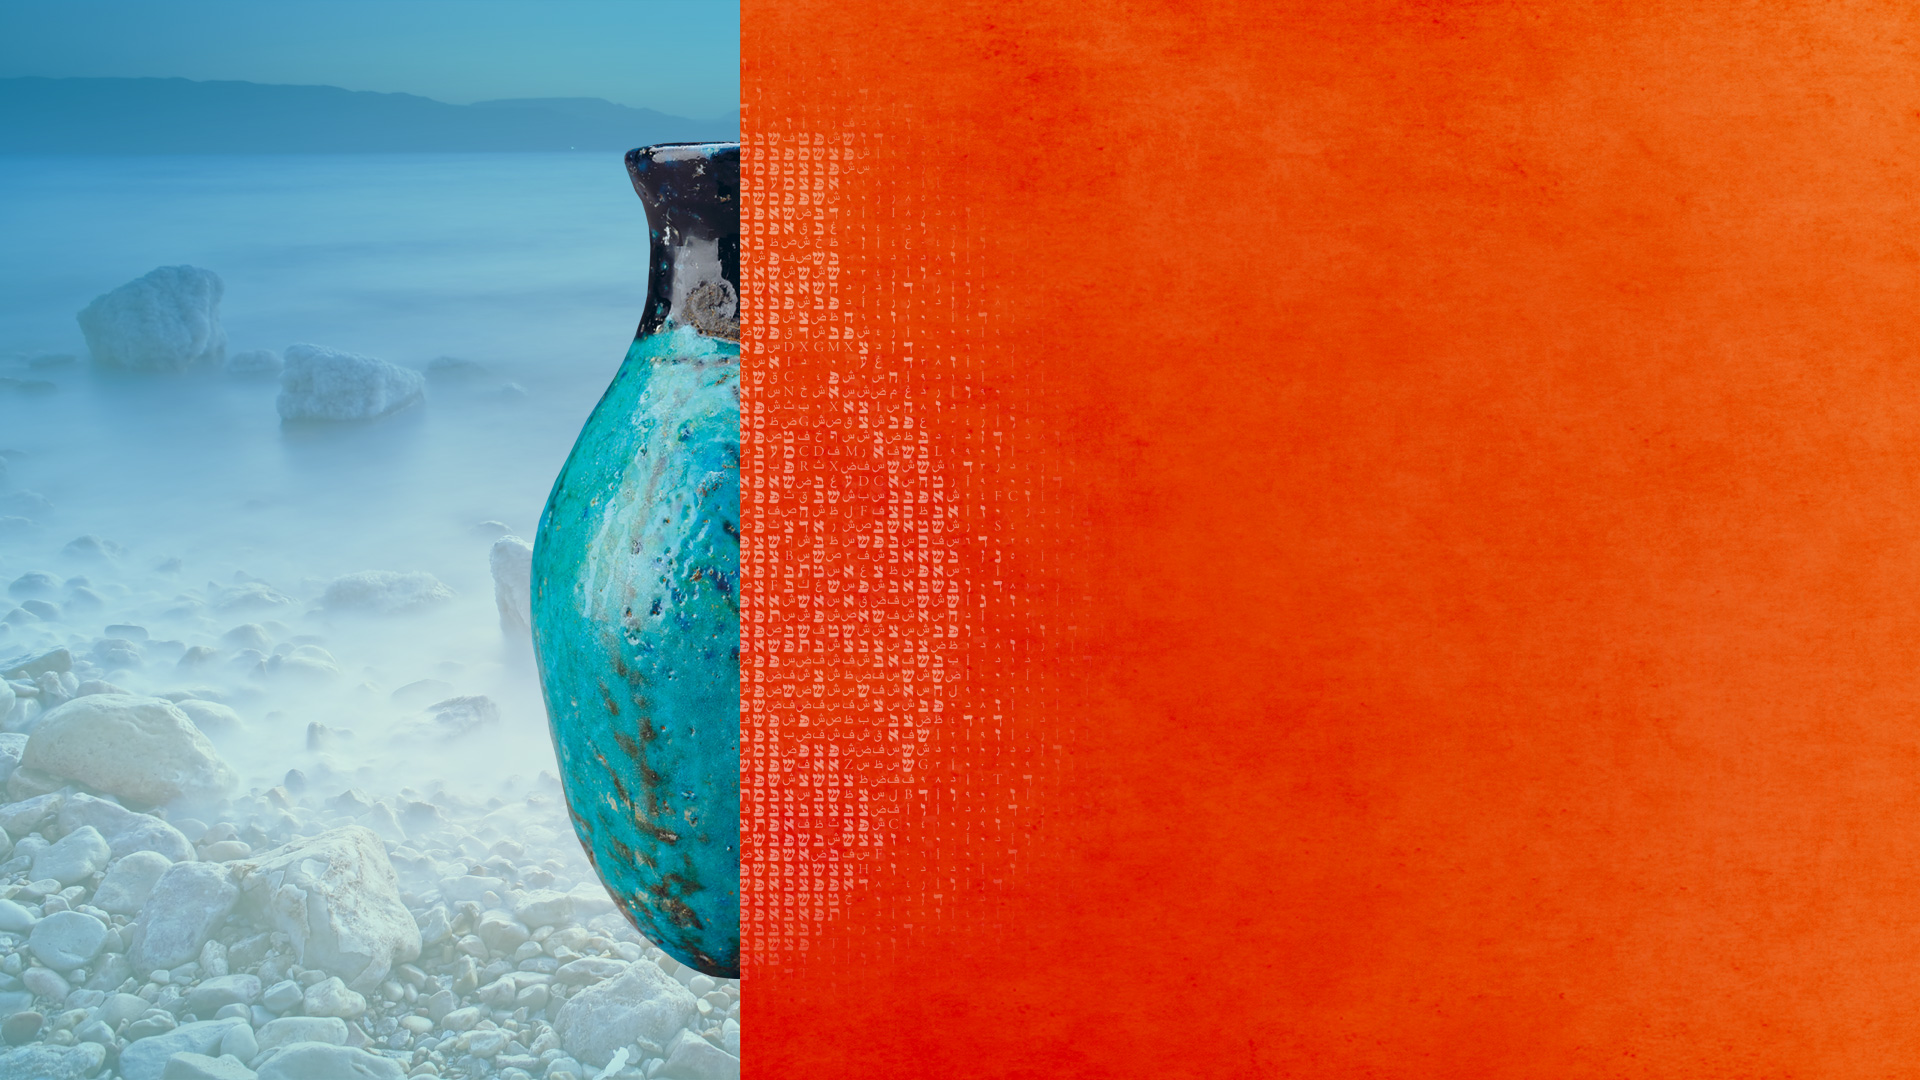 Darstellung einer Vase mit Farbüberlagerung und Ufer des Toten Meeres im Hintergrund